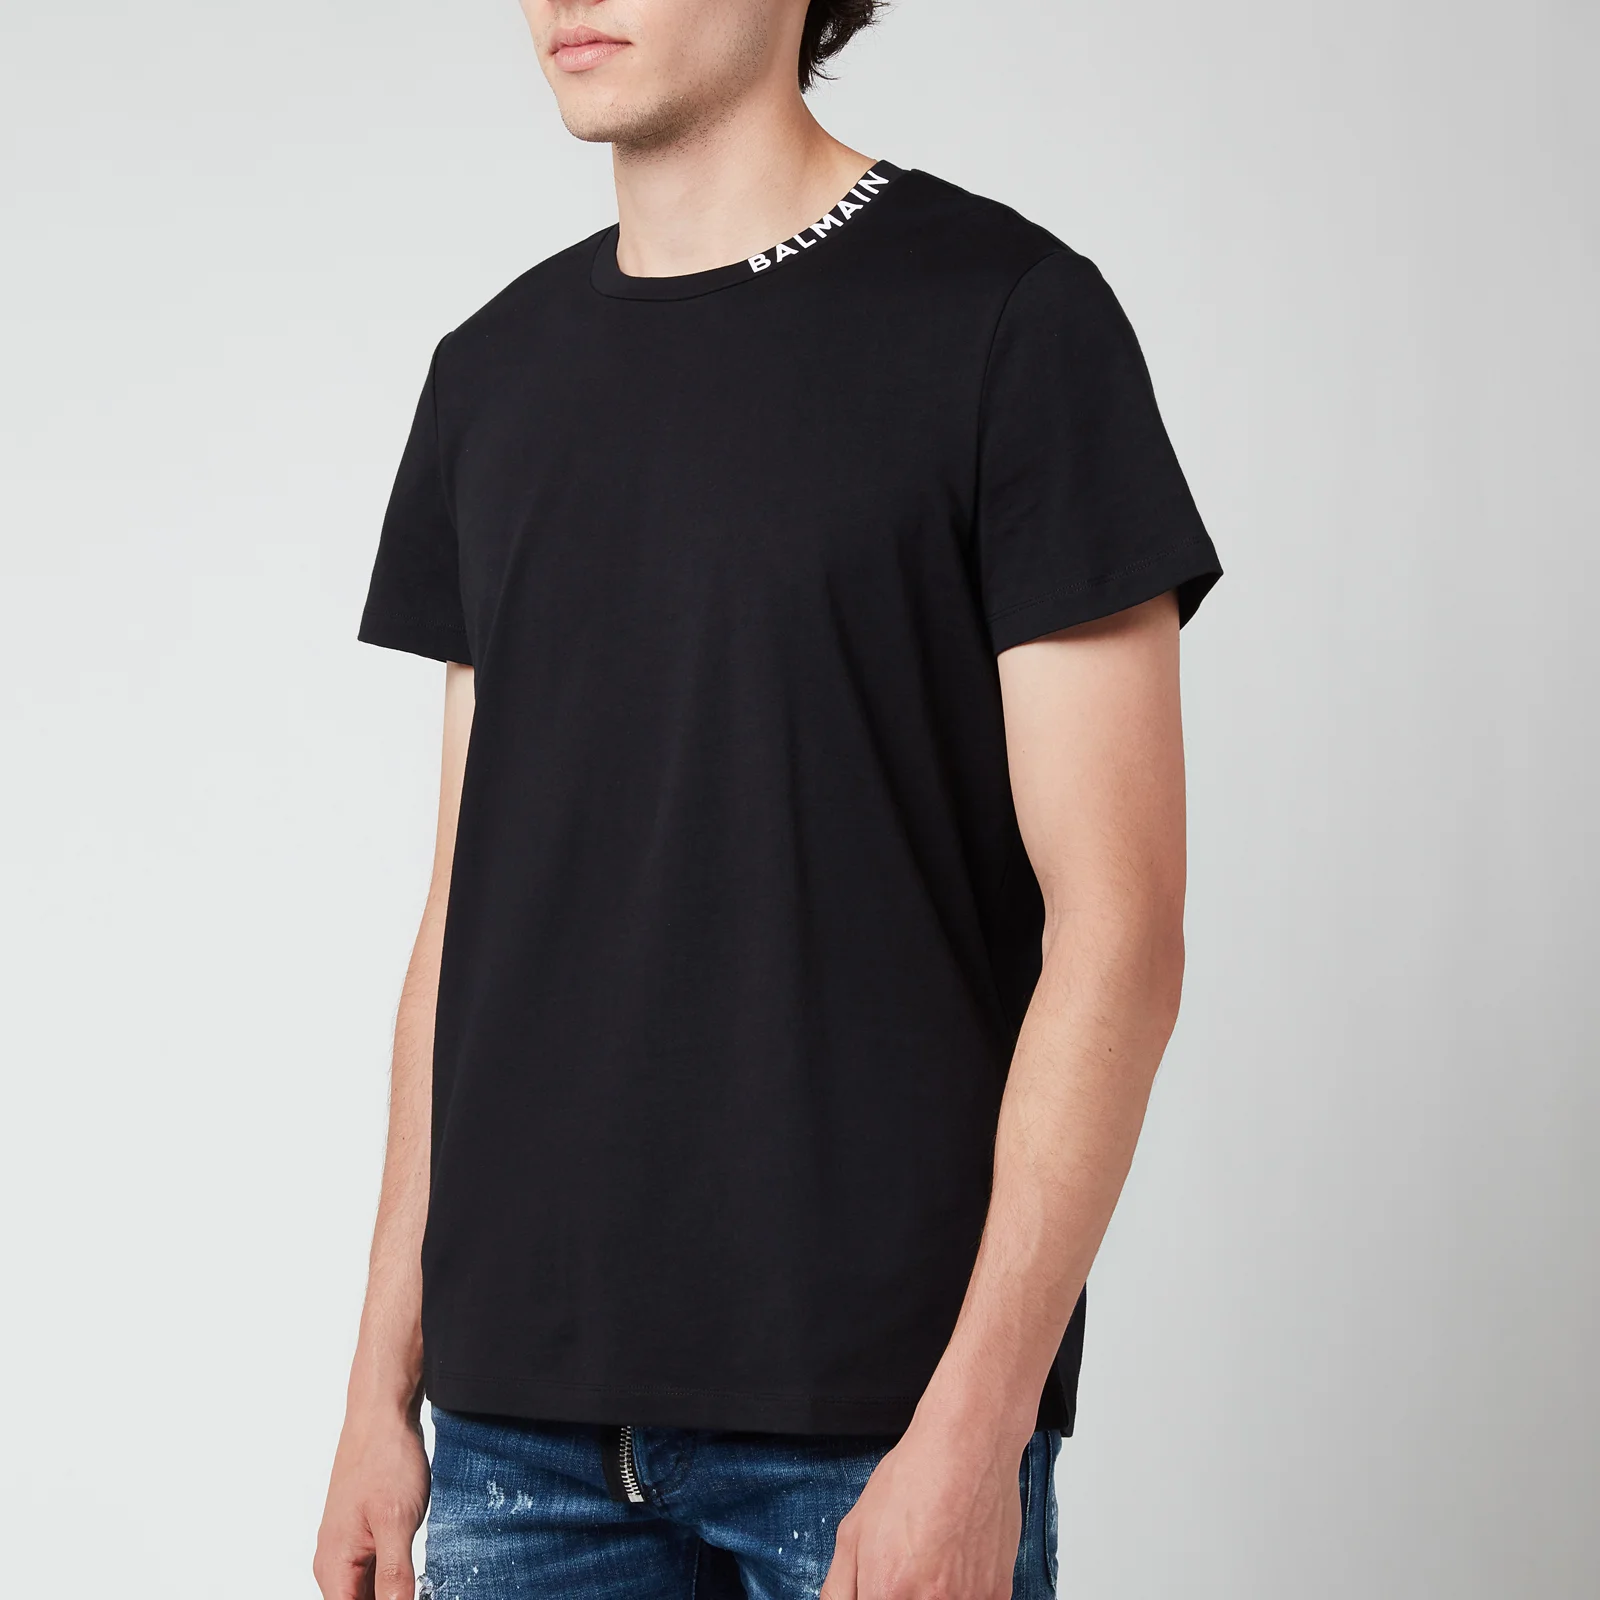 Balmain Men's Printed Collar T-Shirt - Black/White Image 1